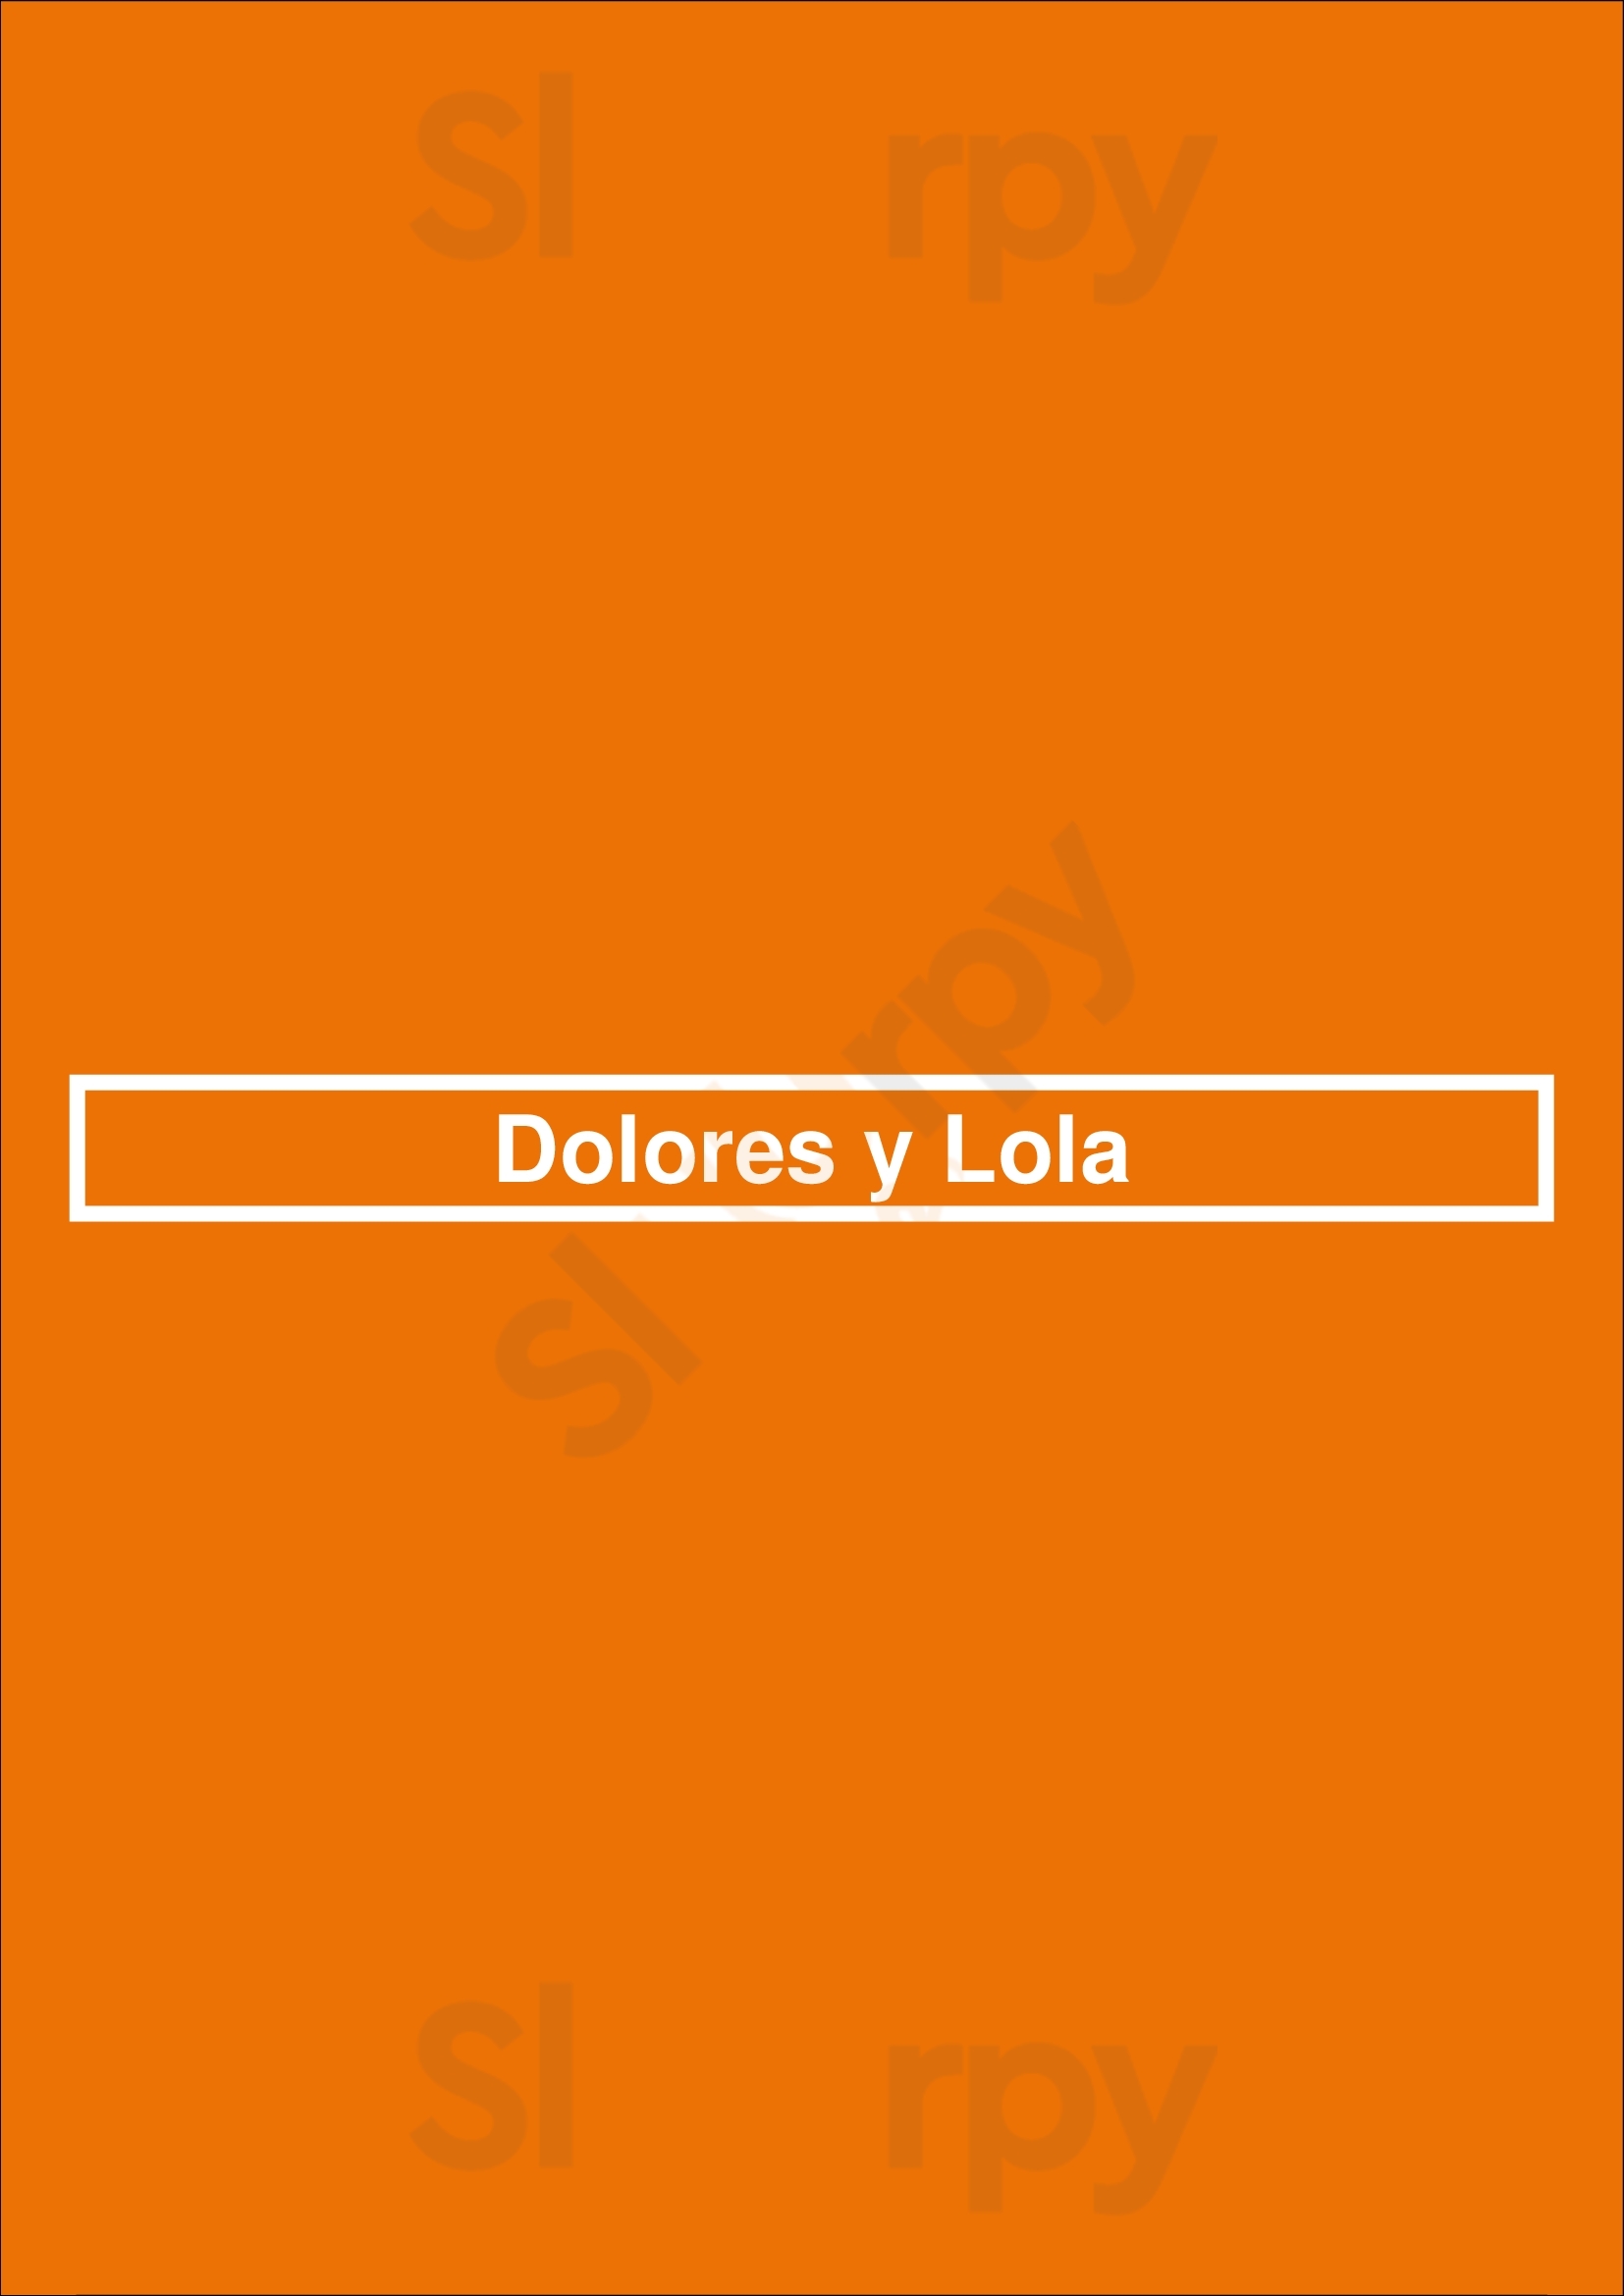 Dolores Y Lola Madrid Menu - 1